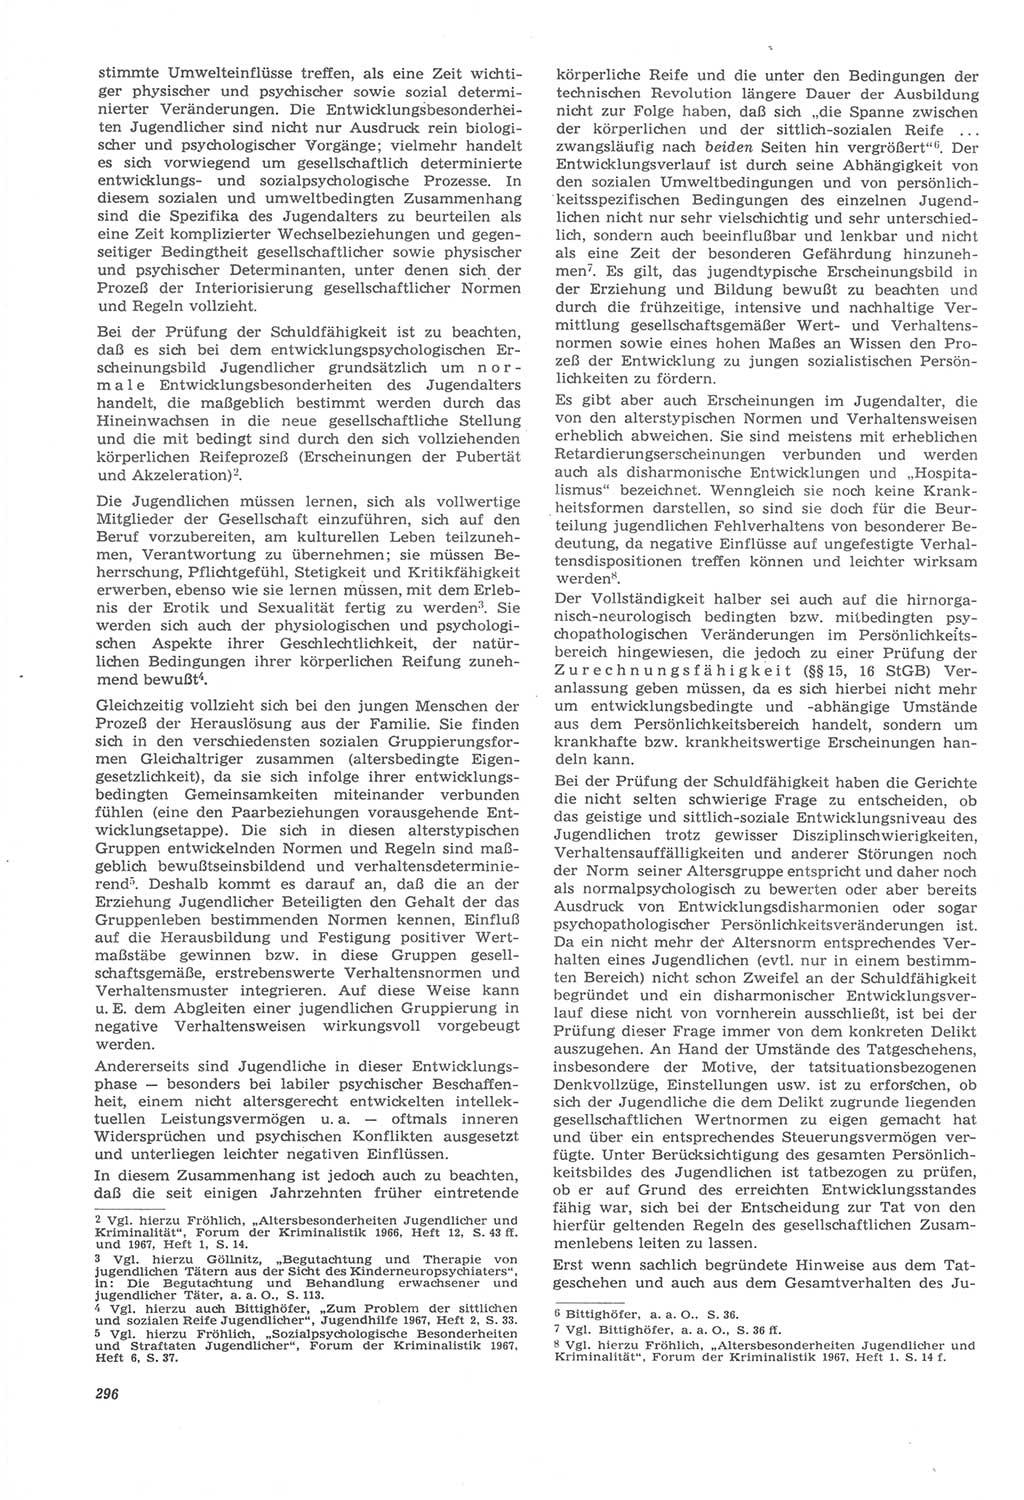 Neue Justiz (NJ), Zeitschrift für Recht und Rechtswissenschaft [Deutsche Demokratische Republik (DDR)], 22. Jahrgang 1968, Seite 296 (NJ DDR 1968, S. 296)